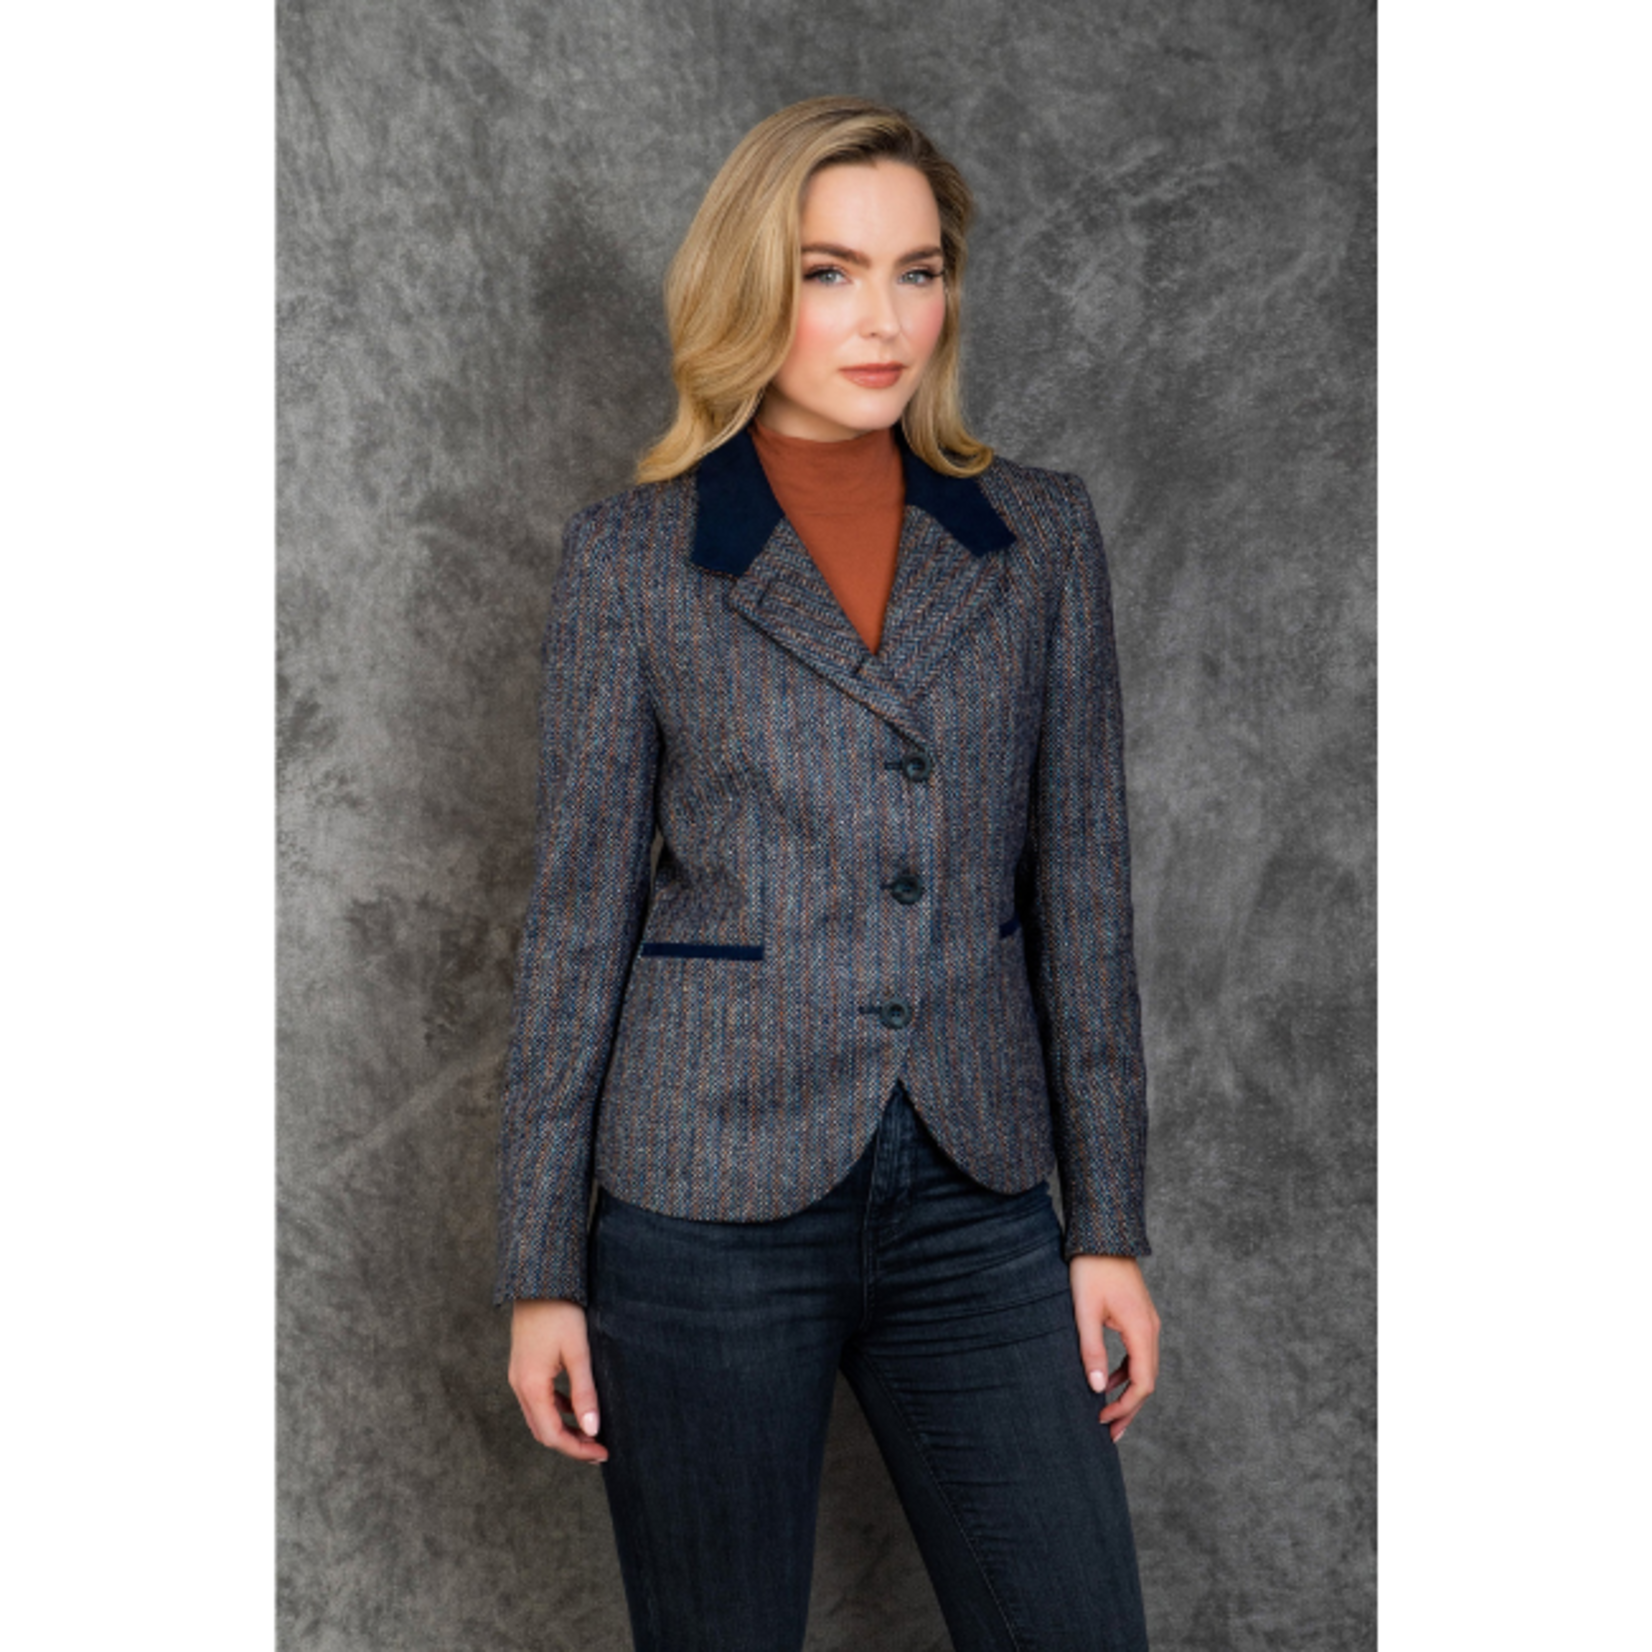 Harris Tweed Vintage Jackets | Vintage Tweed Jacket Women | Vintage Tweed  Jacket Coats - Jackets - Aliexpress